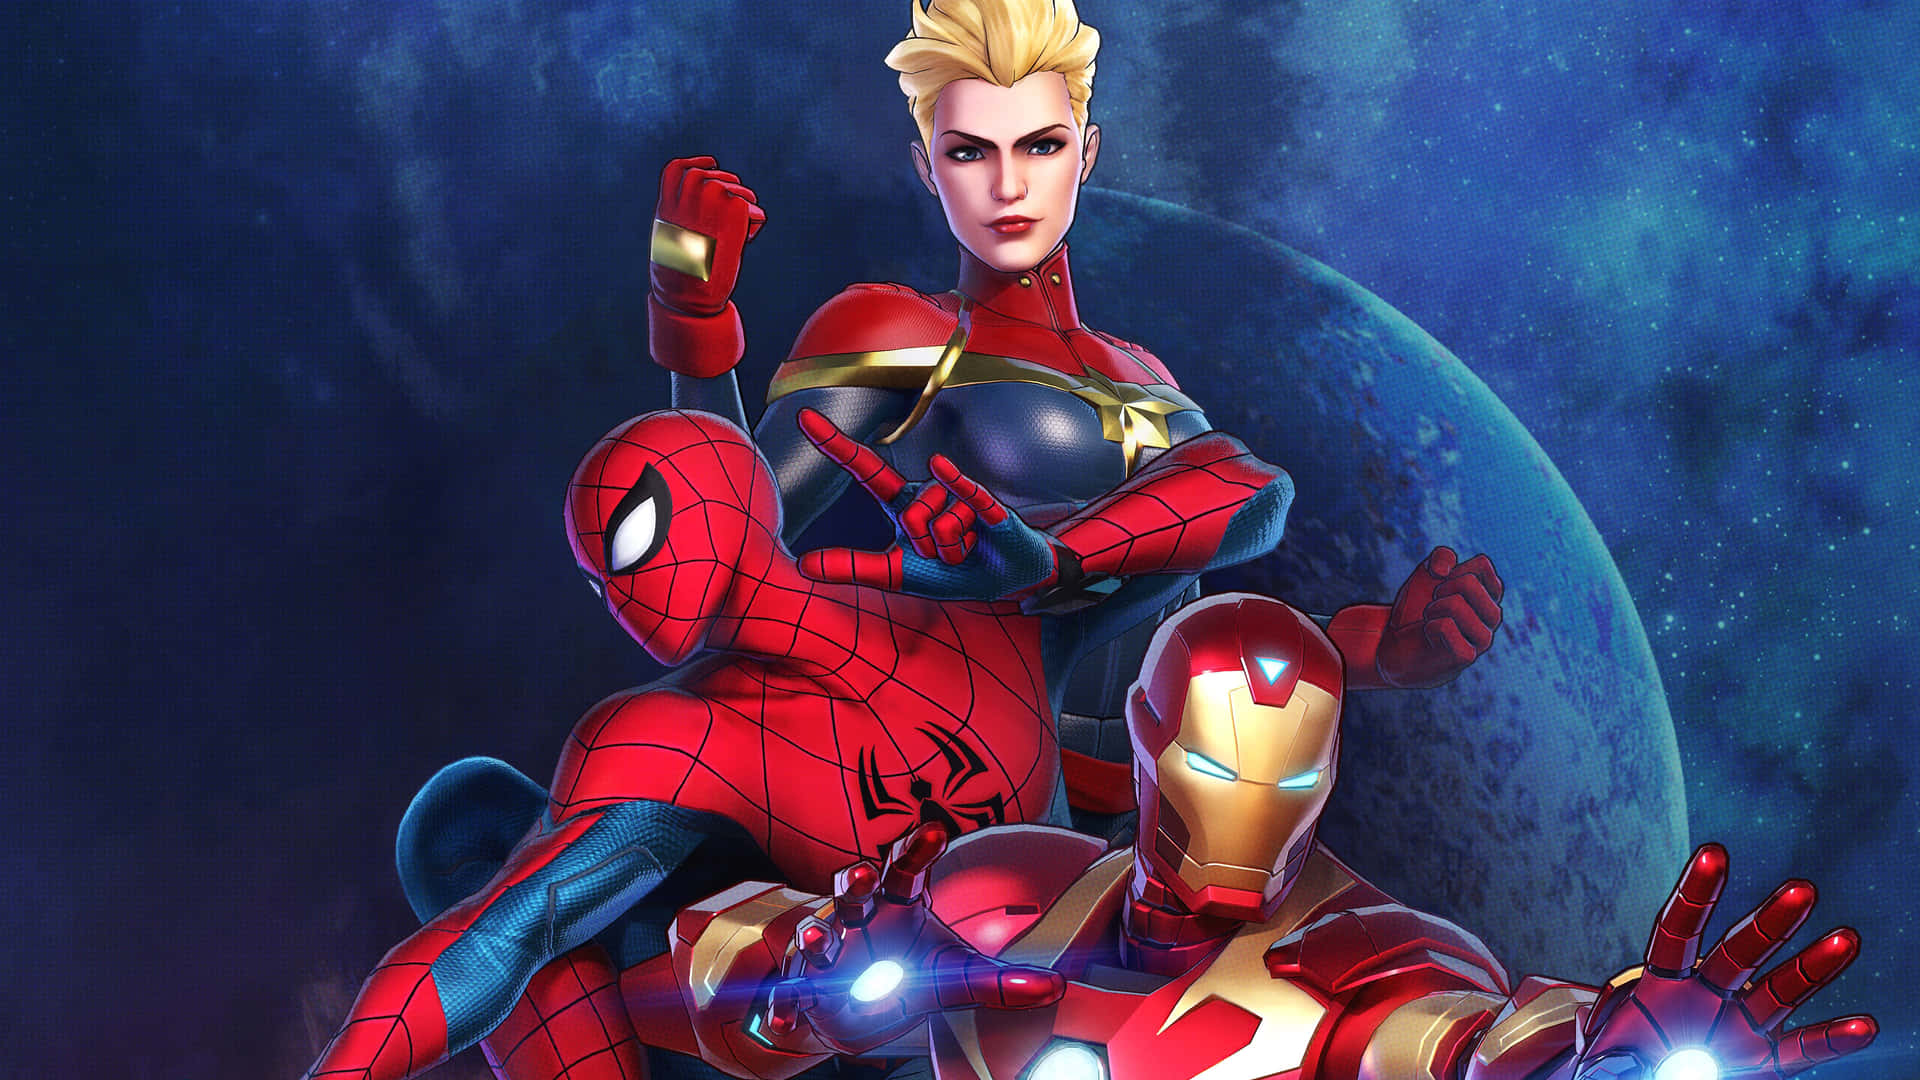 Spiderman E Iron Man Si Uniscono Per Combattere Per La Giustizia. Sfondo